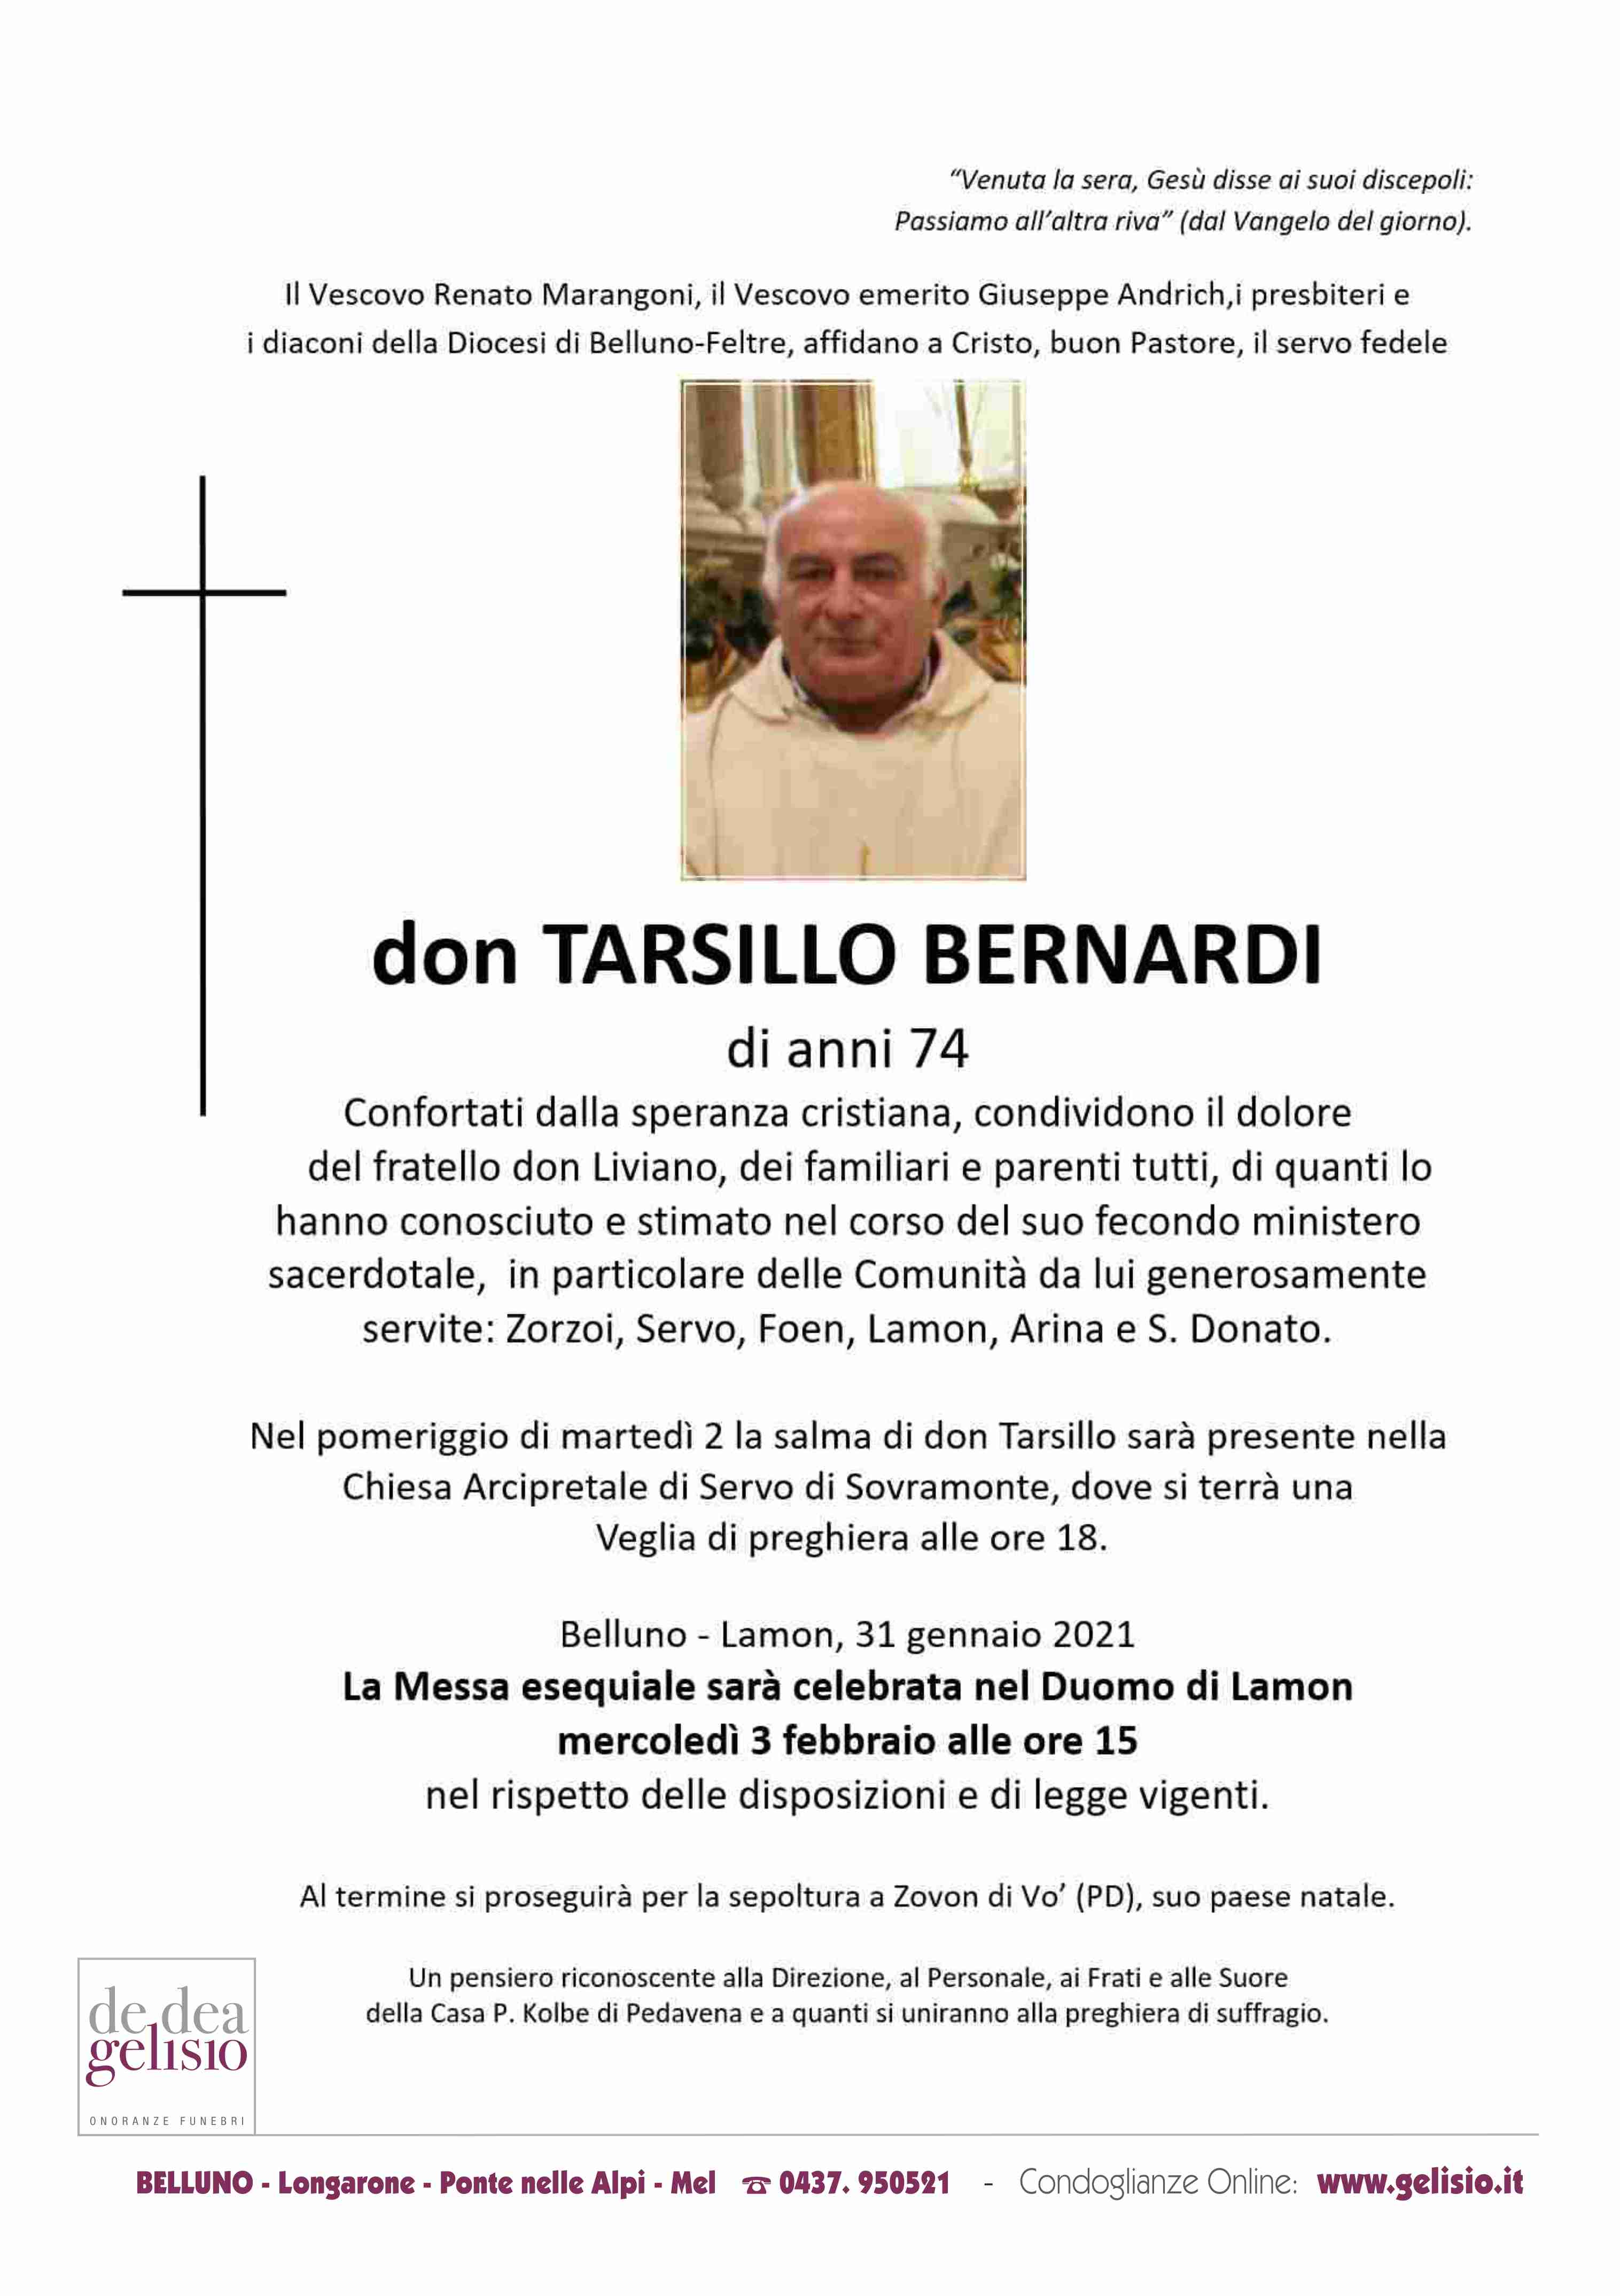 Don_Tersilio_Bernardi1.jpg